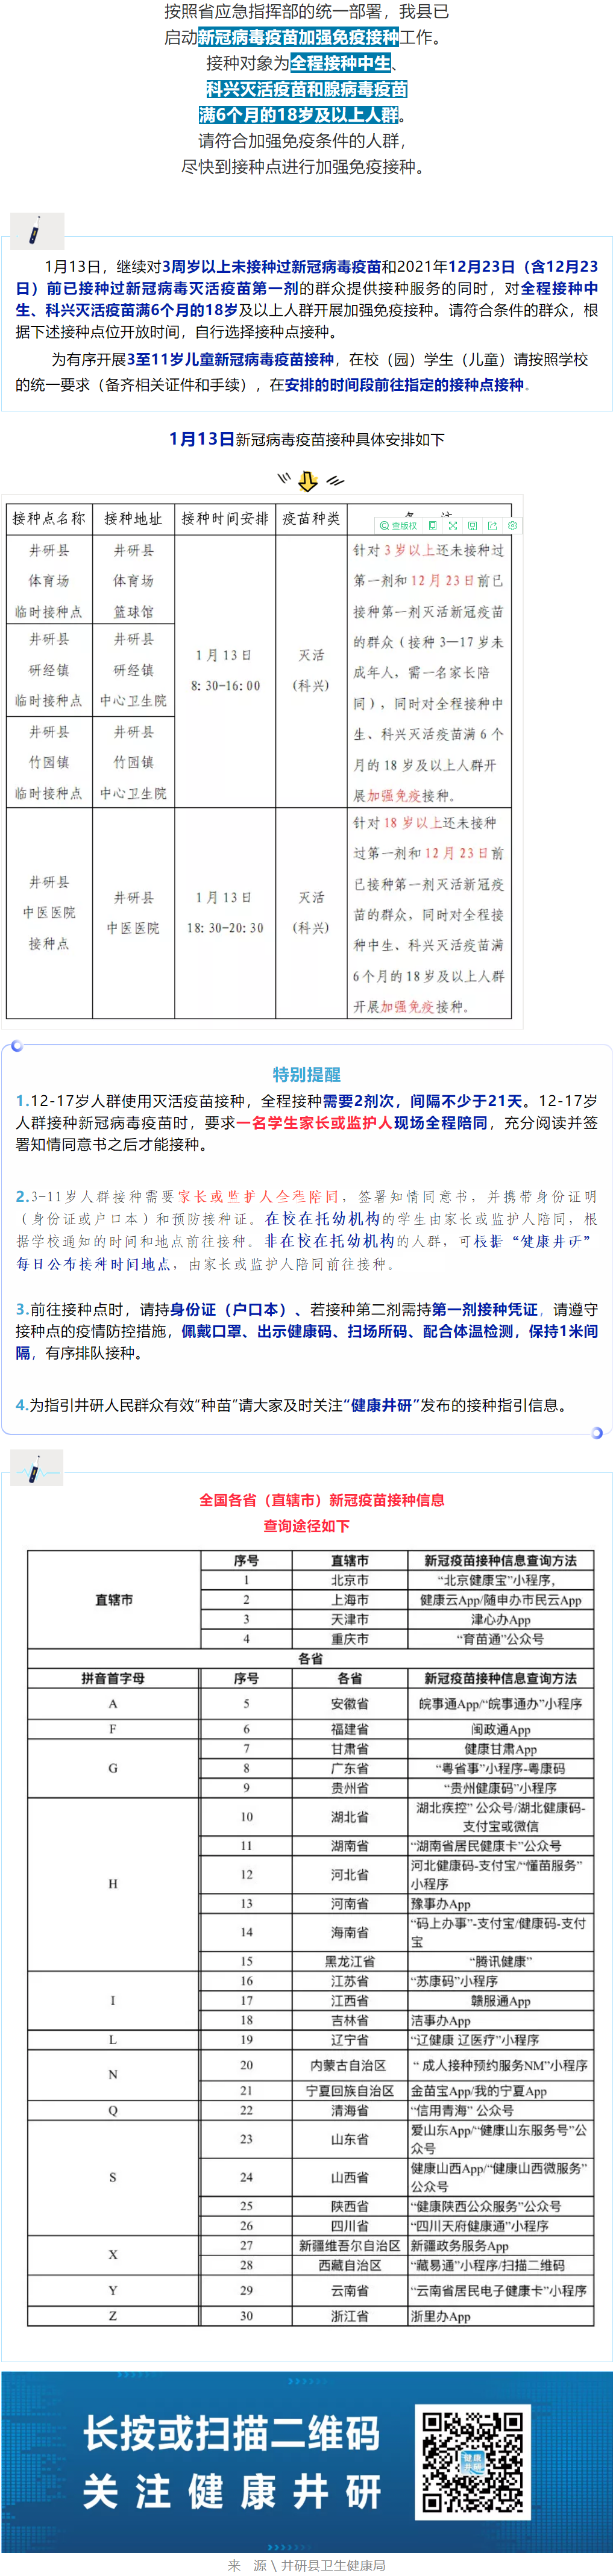 【疫苗接种】井研县1月13号新冠病毒疫苗接种安排